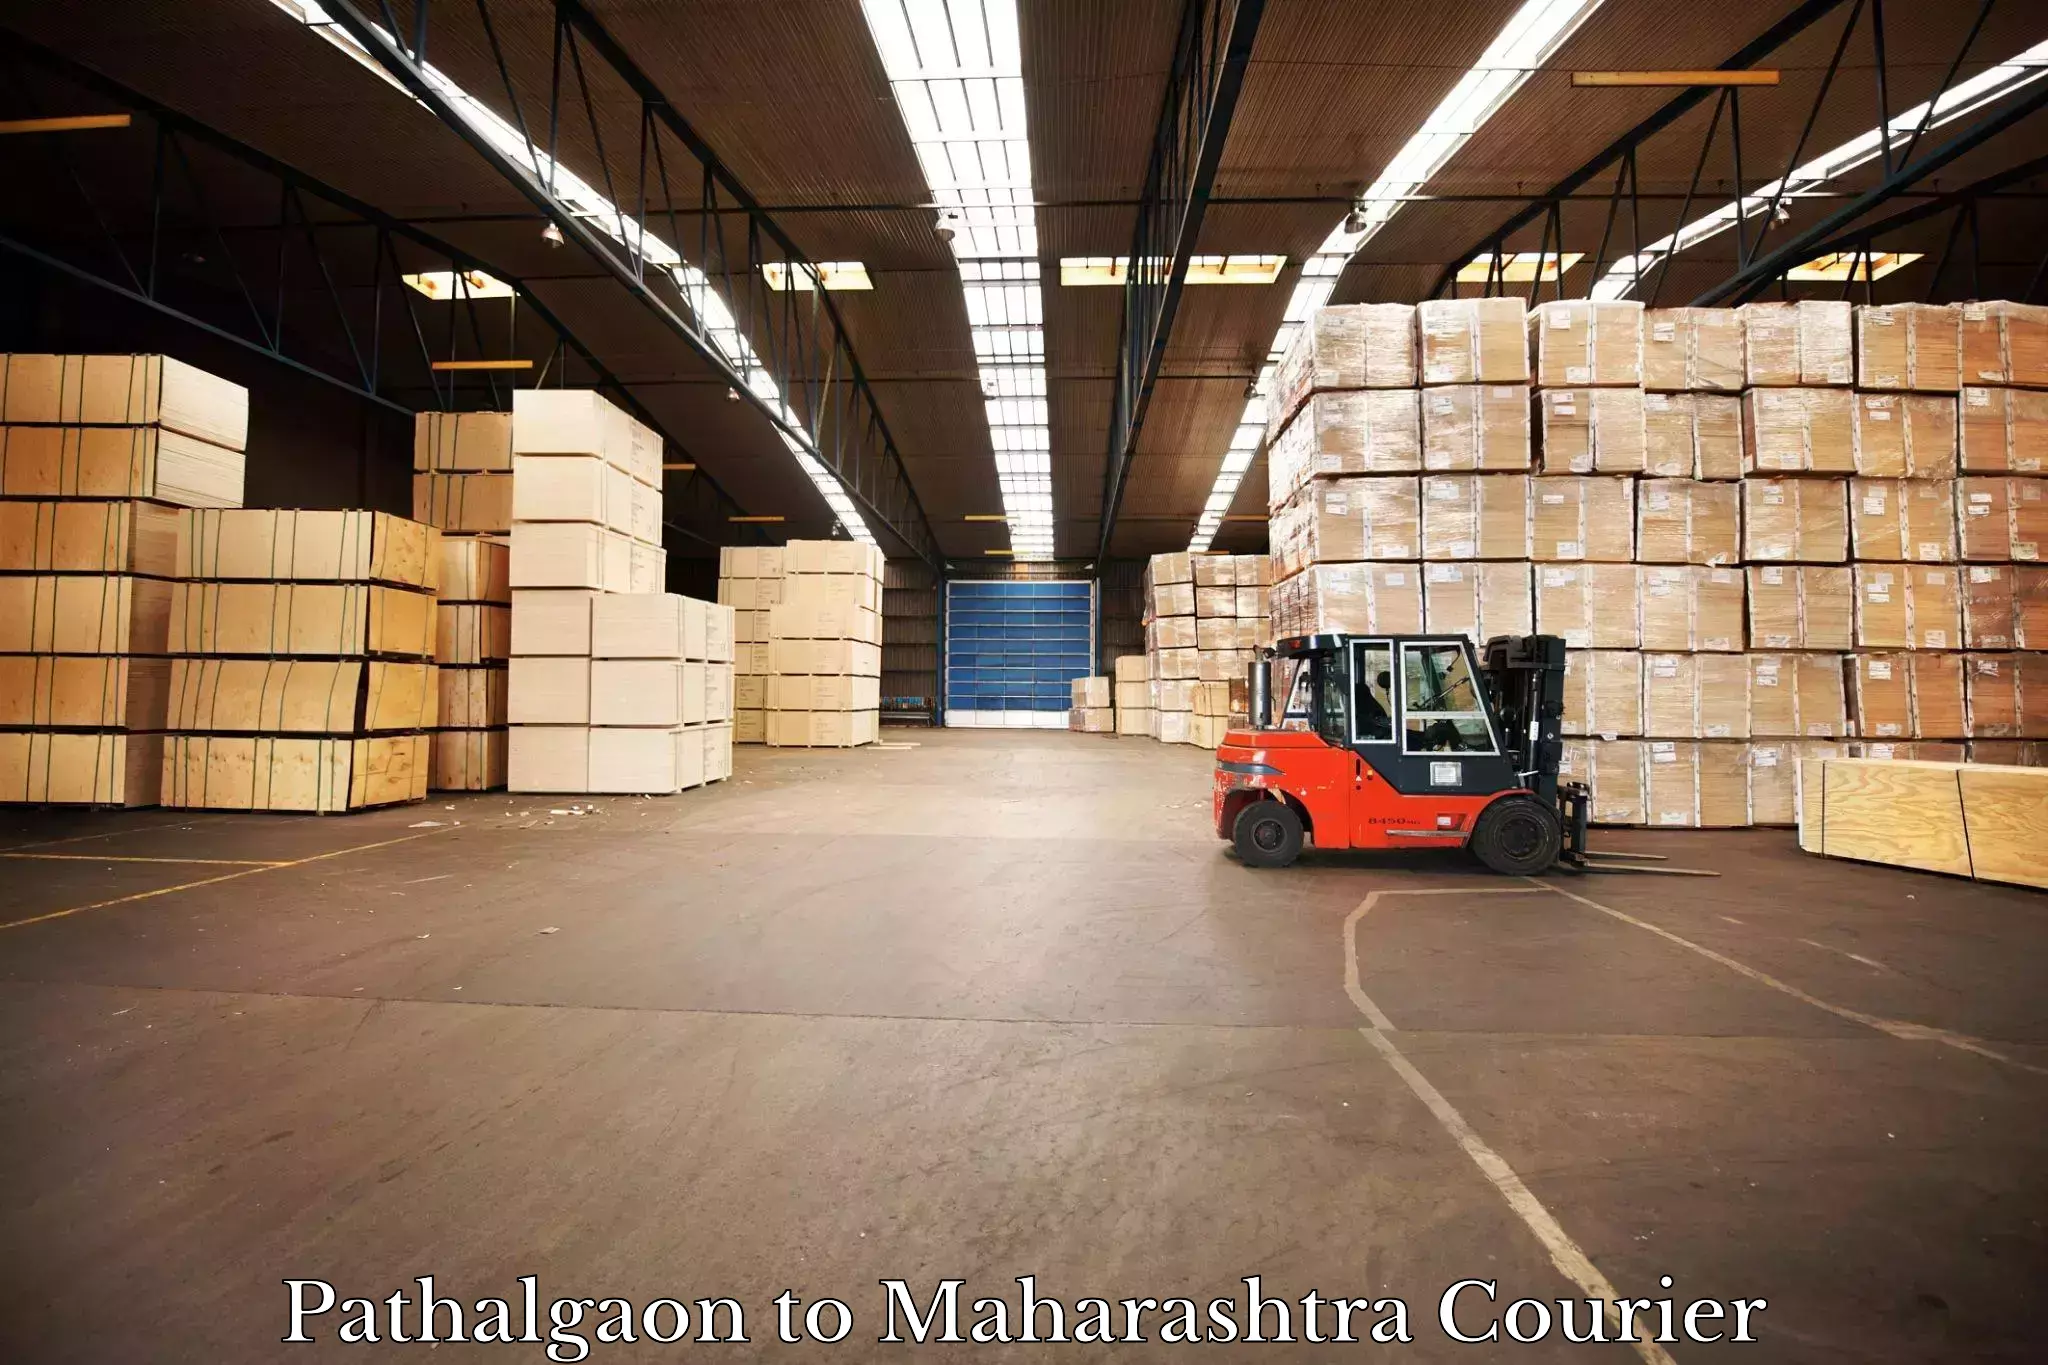 Delivery service partnership Pathalgaon to Maharashtra